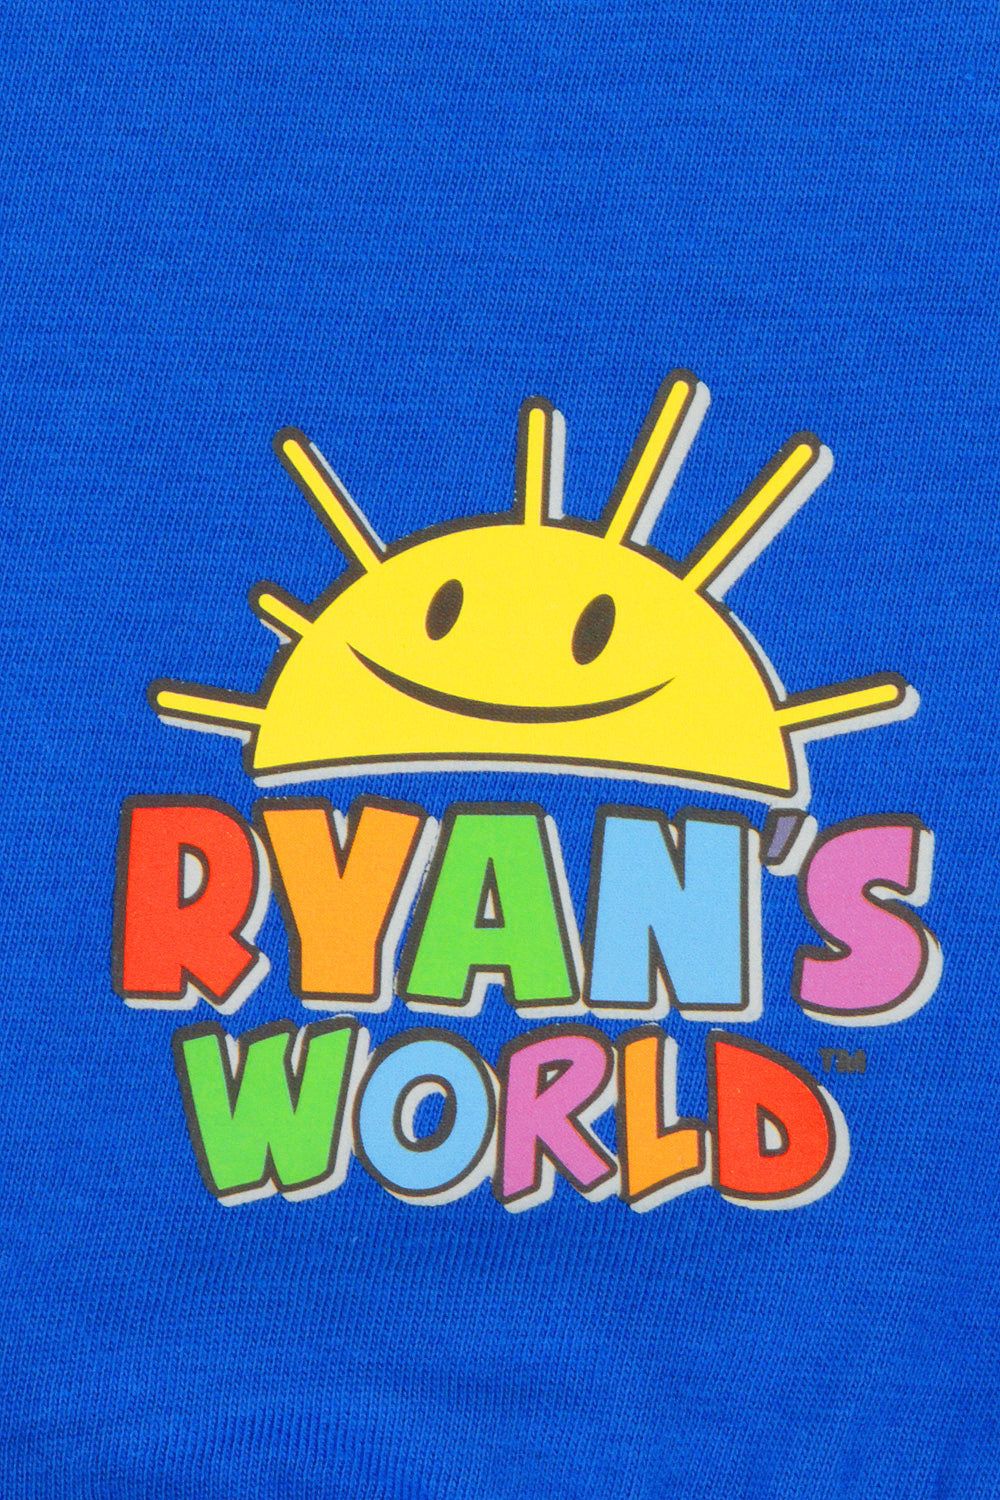 Boys Ryan's World Pyjamas - Pyjamas.com